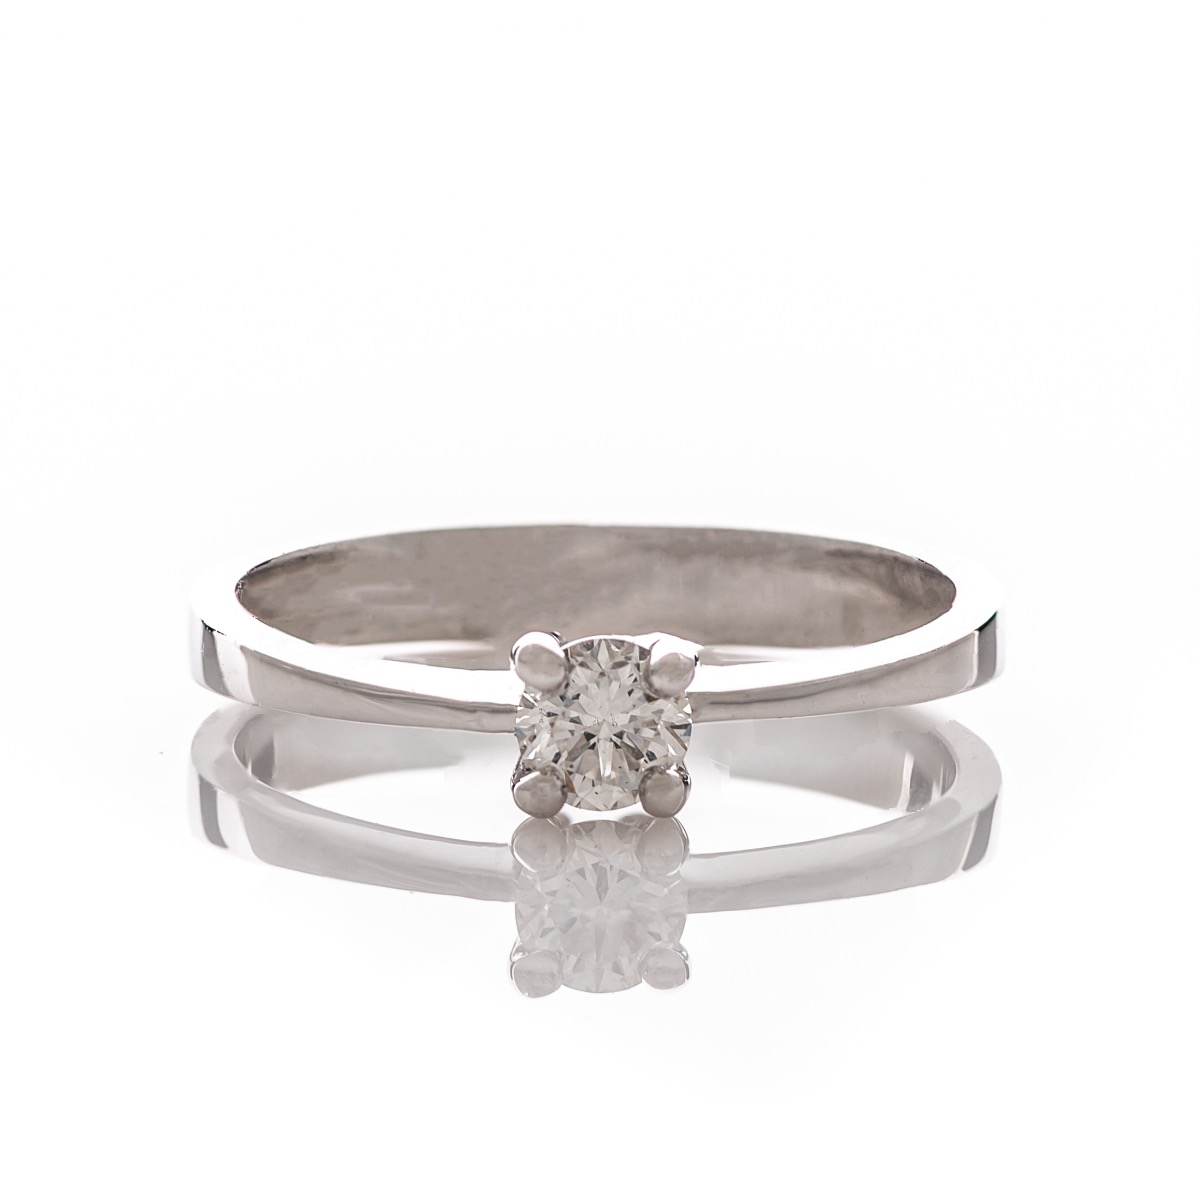 Златен годежен пръстен с диамант - 0,304 ct.